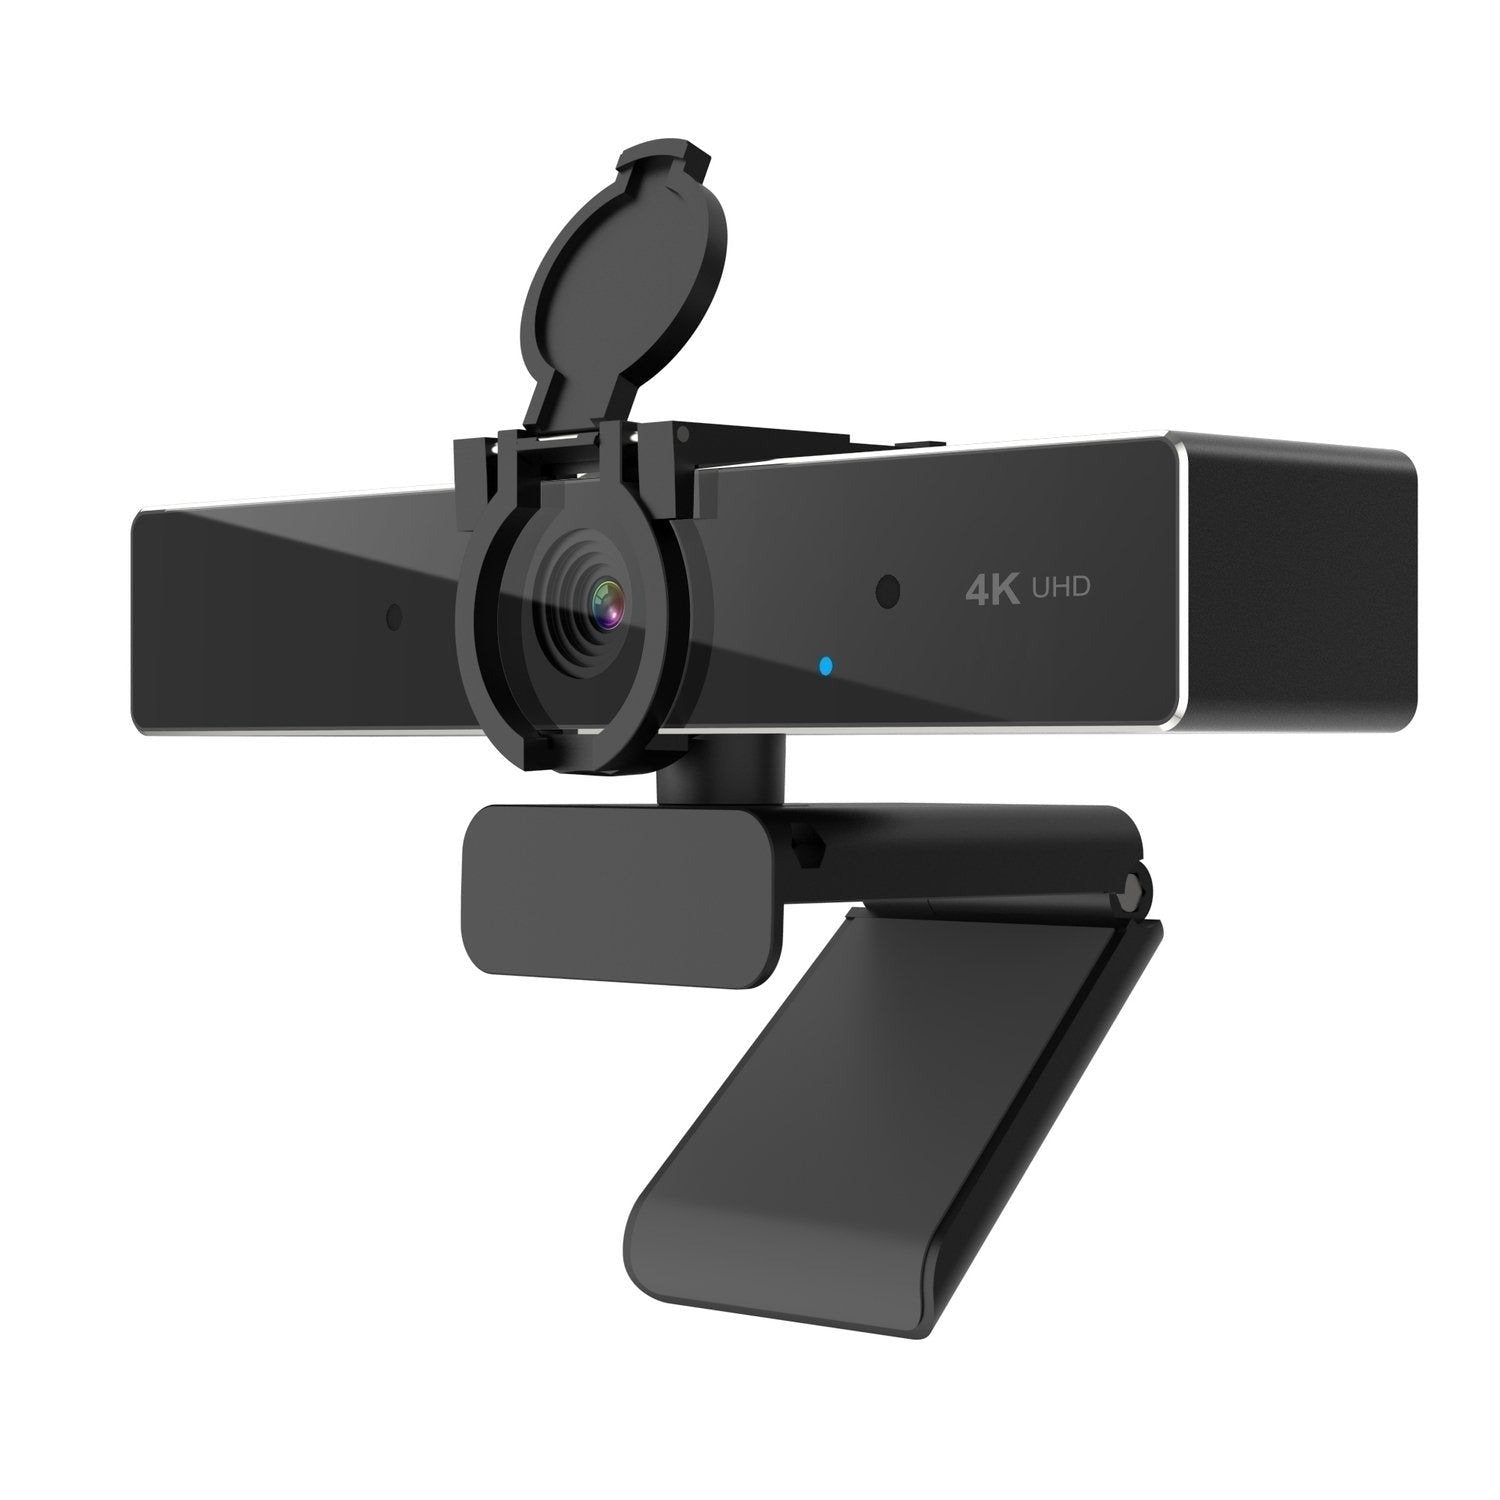 NÖRDIC UHD 4K 30fps Webcam autofokus dobbelt mikrofon 8 Megapixel 1/2,8" CMOS sensor